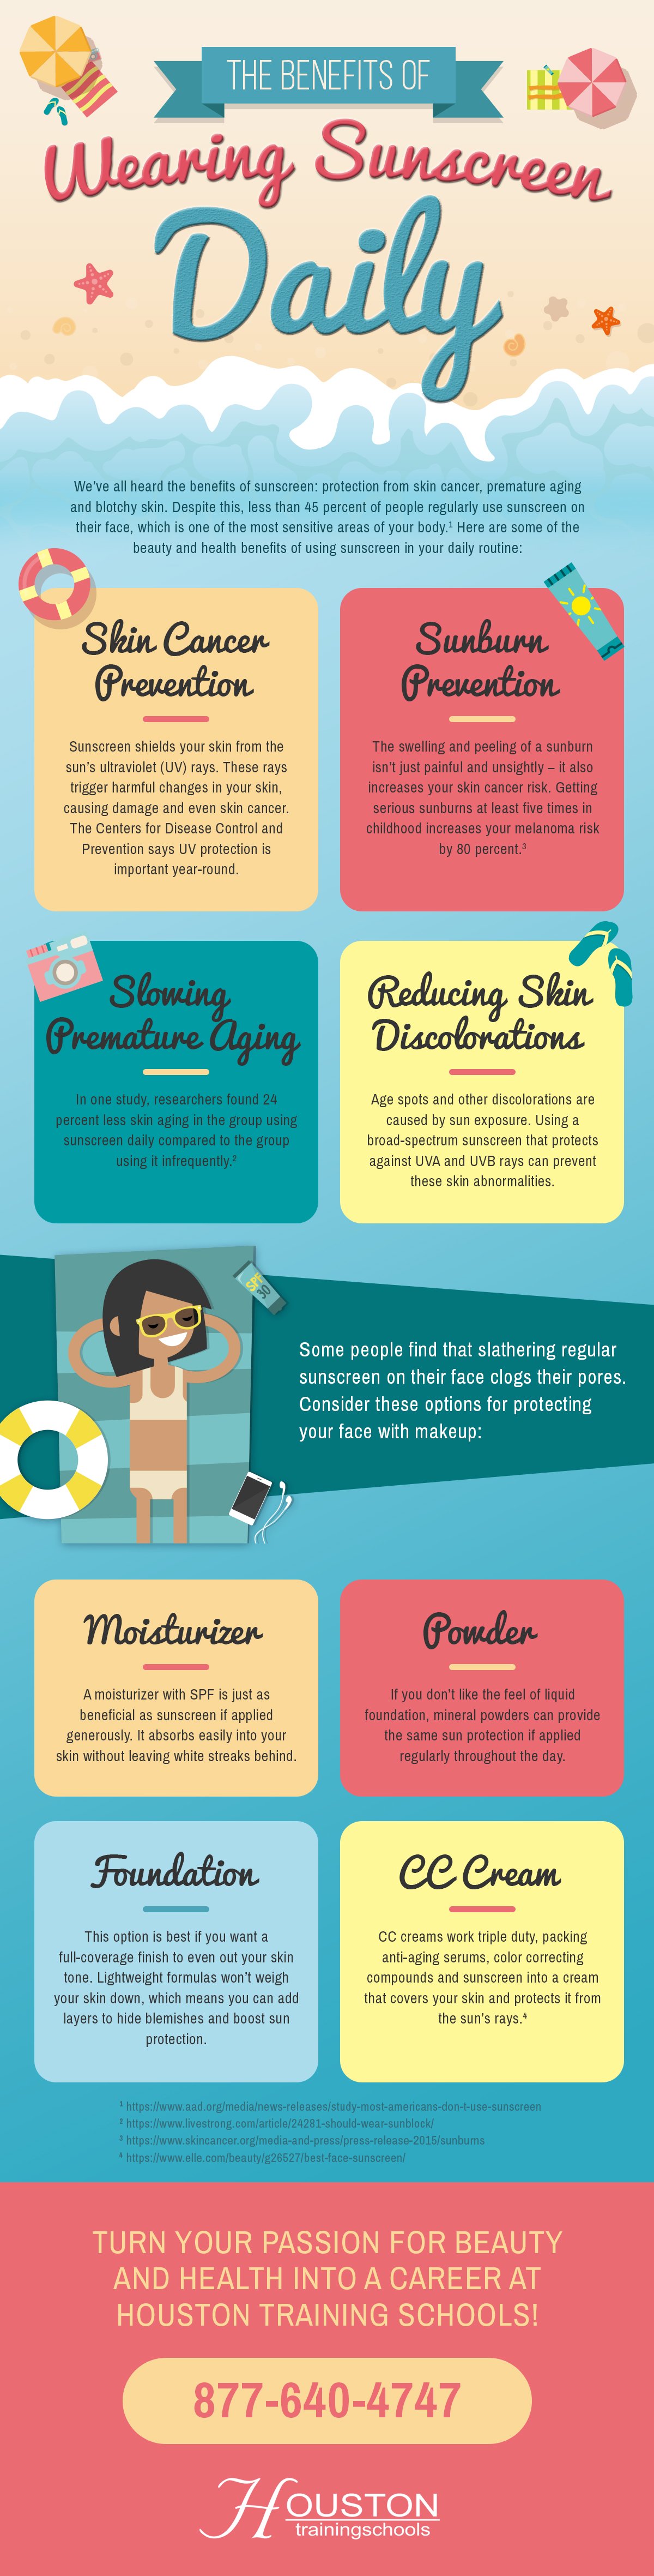 Sunscreen Benefits